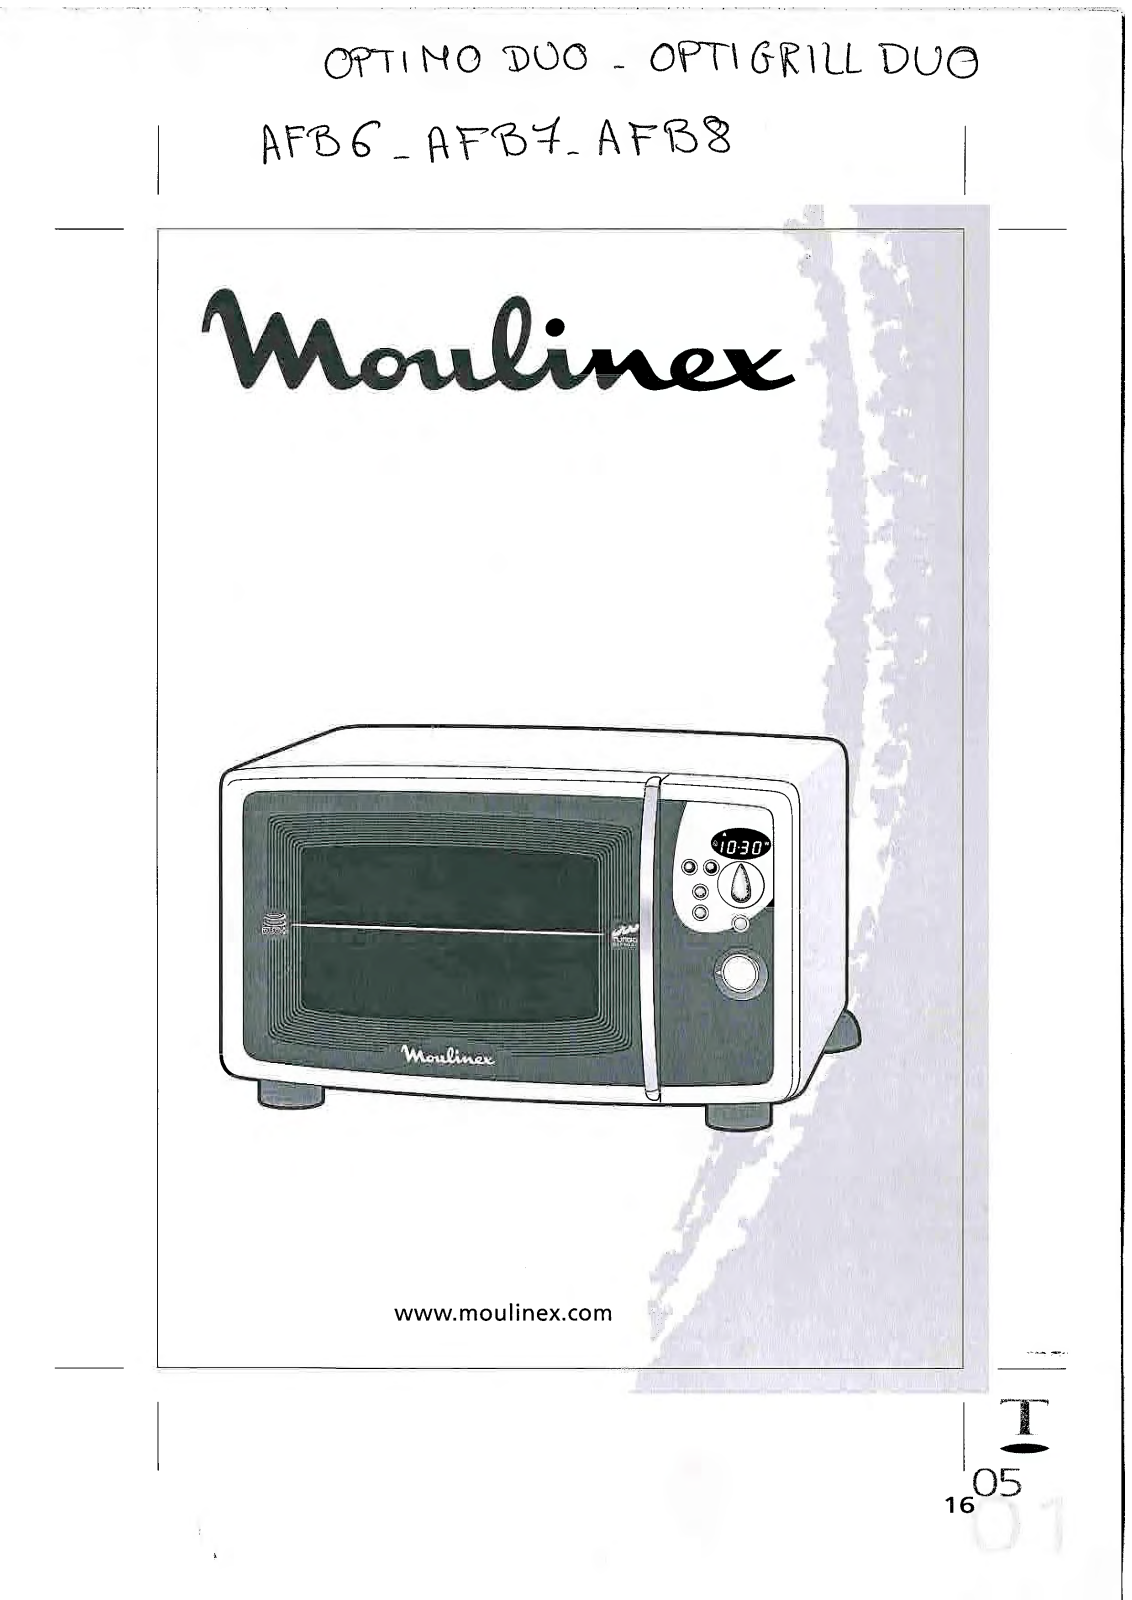 MOULINEX AFB6, AFB7, AFB8 User Manual